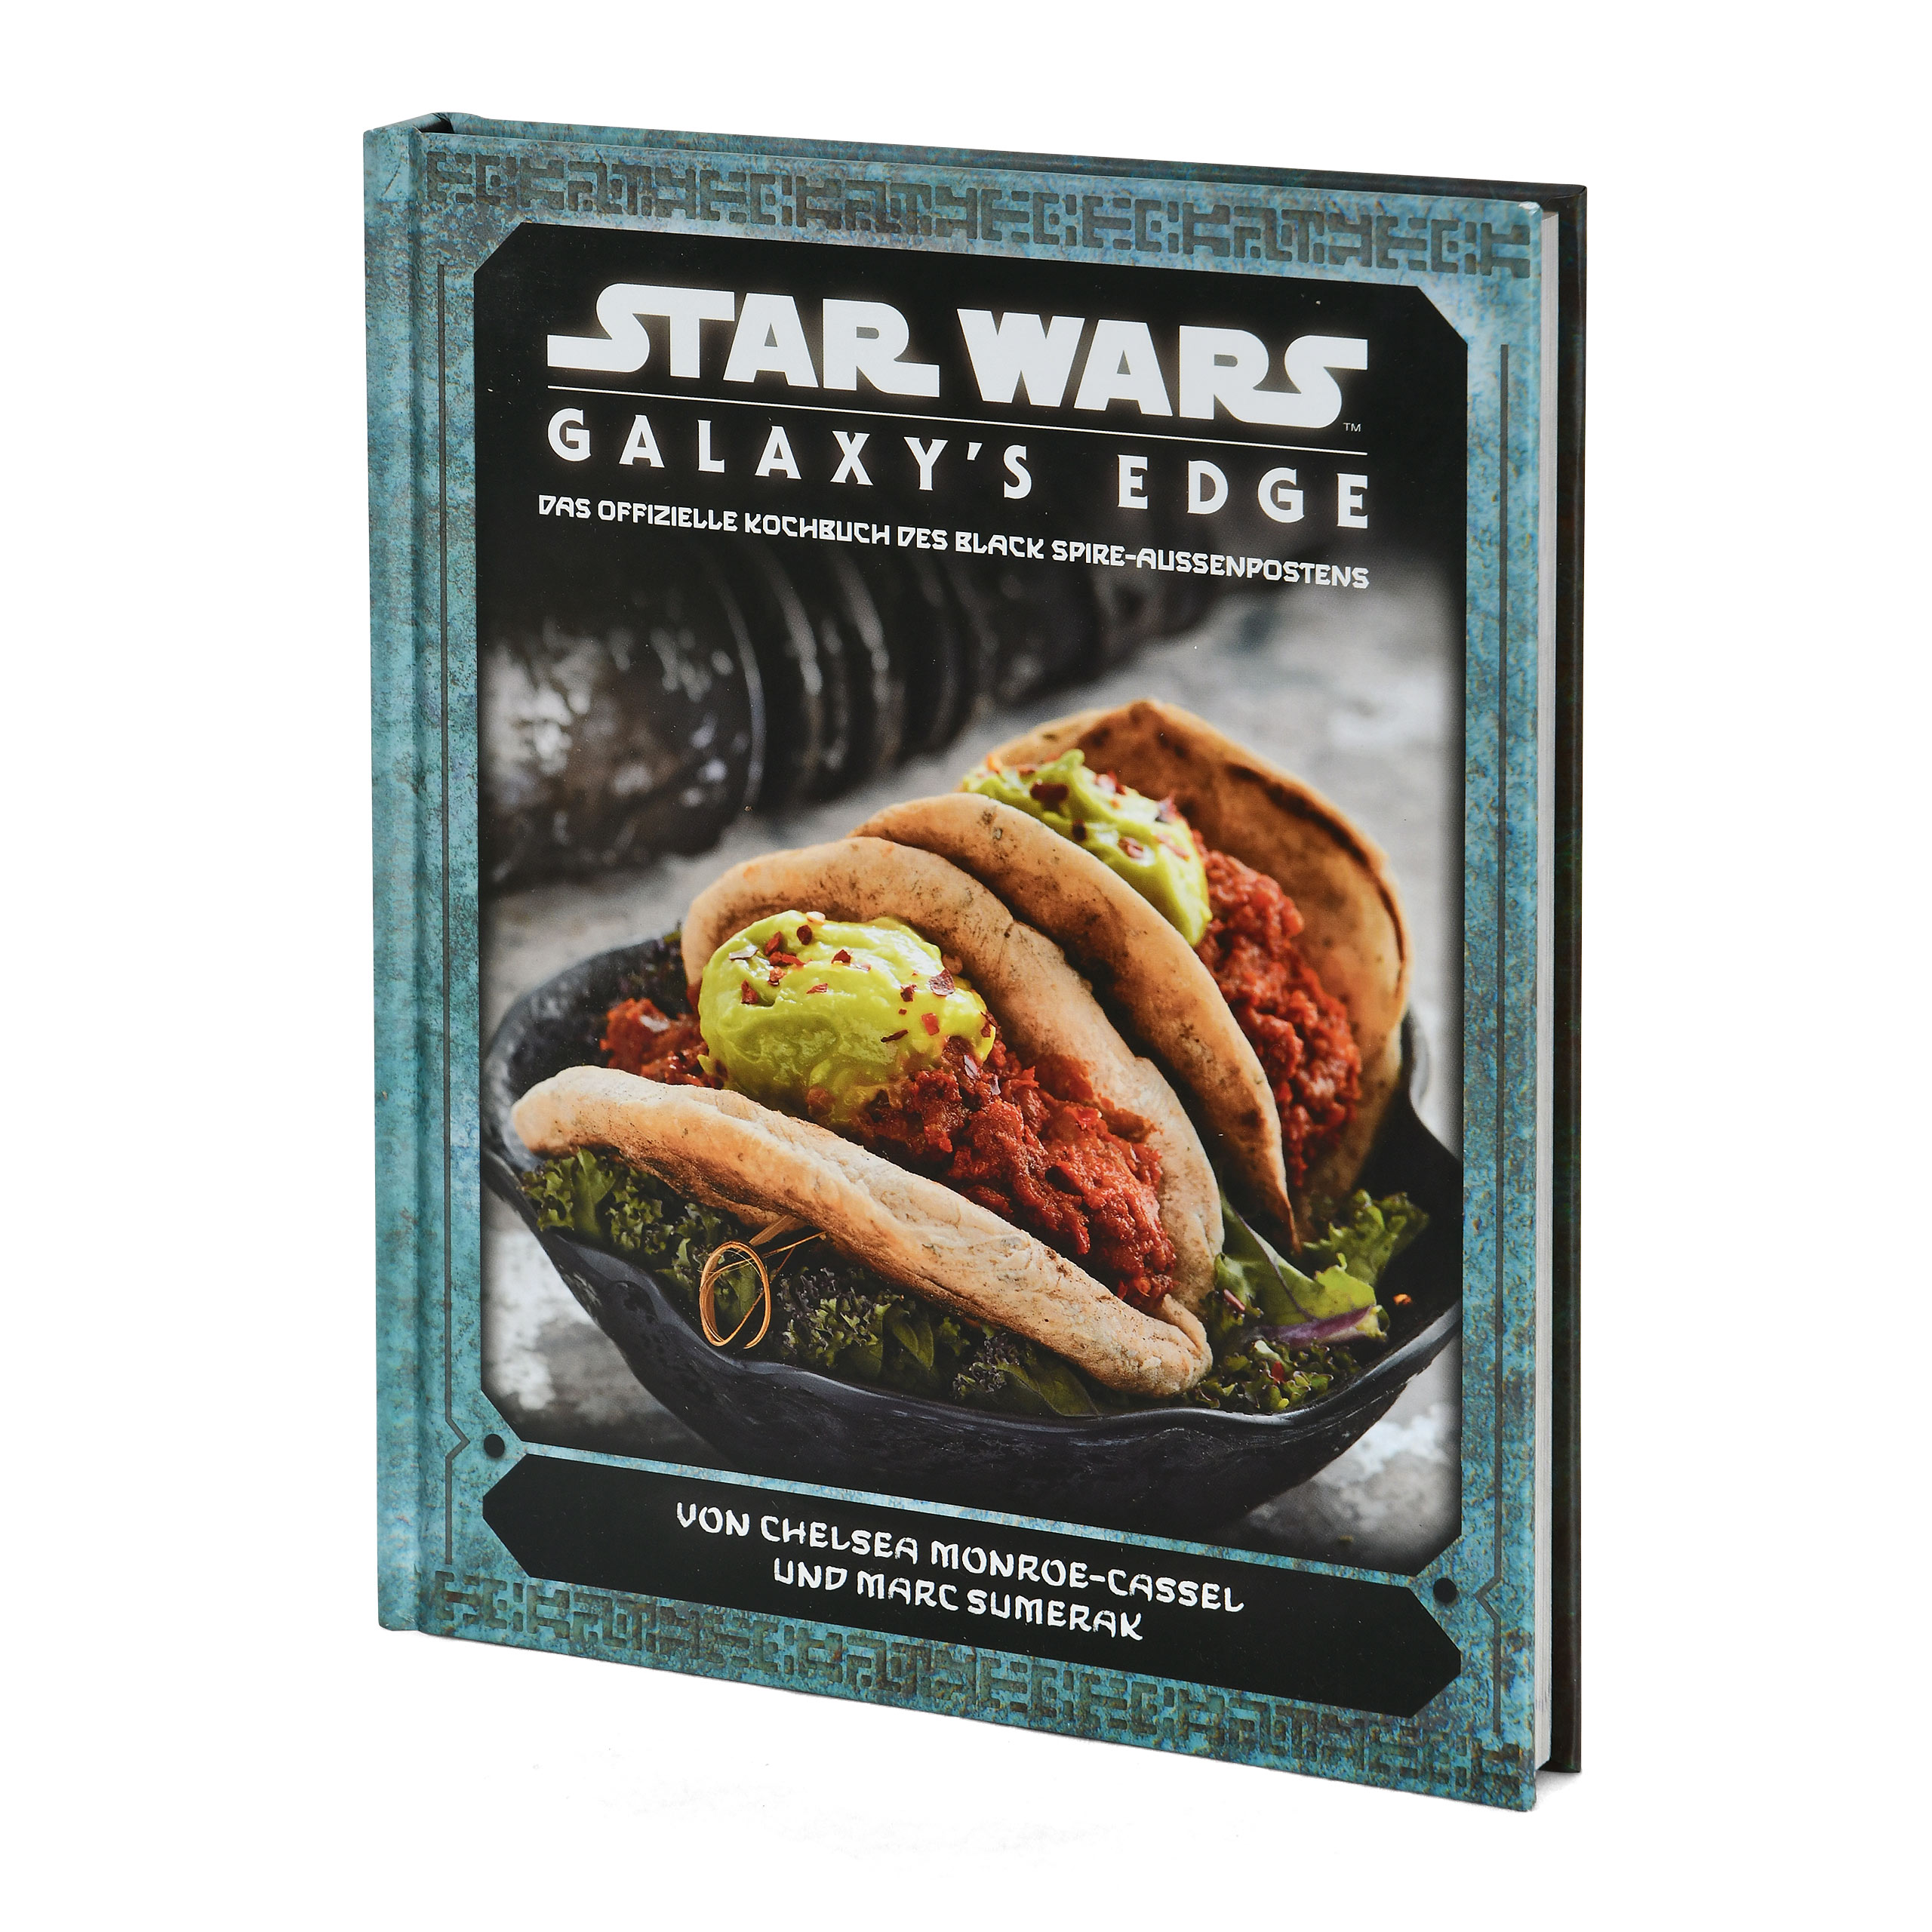 Star Wars - Galaxy's Edge Het officiële kookboek van de Black Spire Outpost